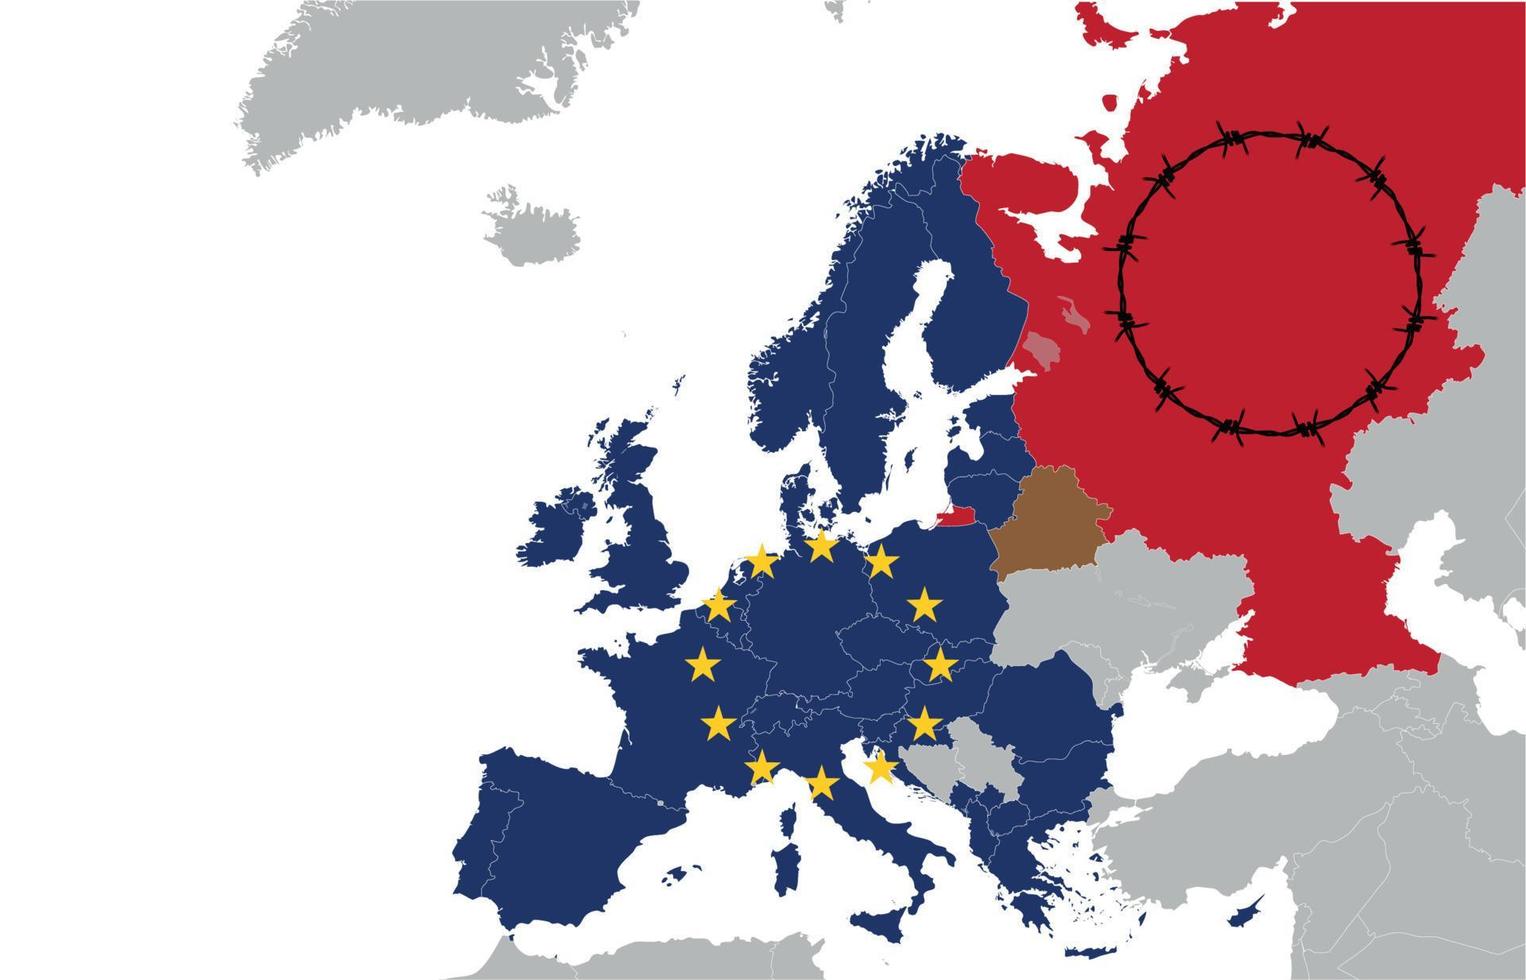 Karte von Europa mit Weißrussland und Russland, Konzept der politischen Beziehungen. Weißrussland in Form von Scheiße zwischen den Ländern. Vektor-Illustration vektor